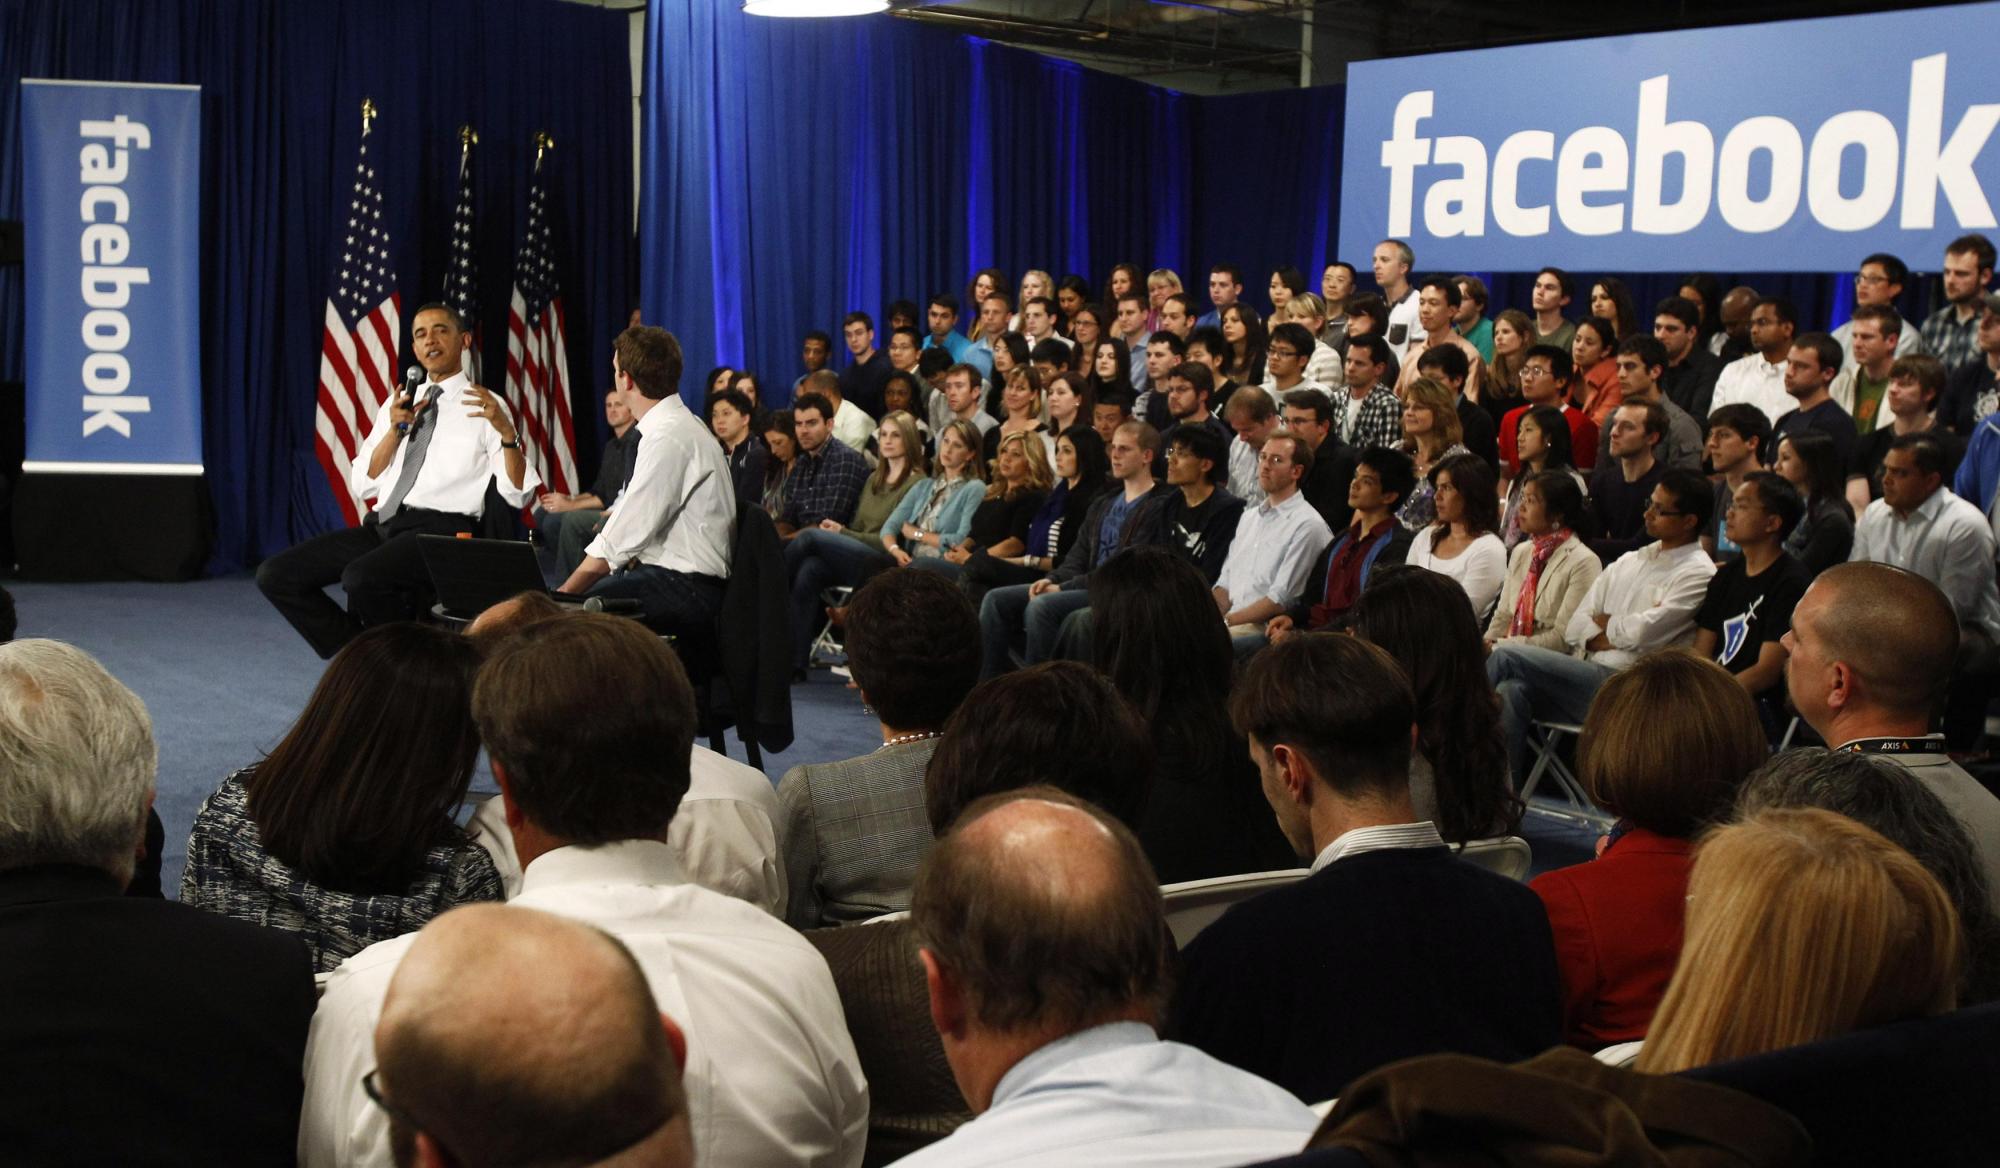 奥巴马造访“脸谱网”总部与网民互动 被批为其做宣传